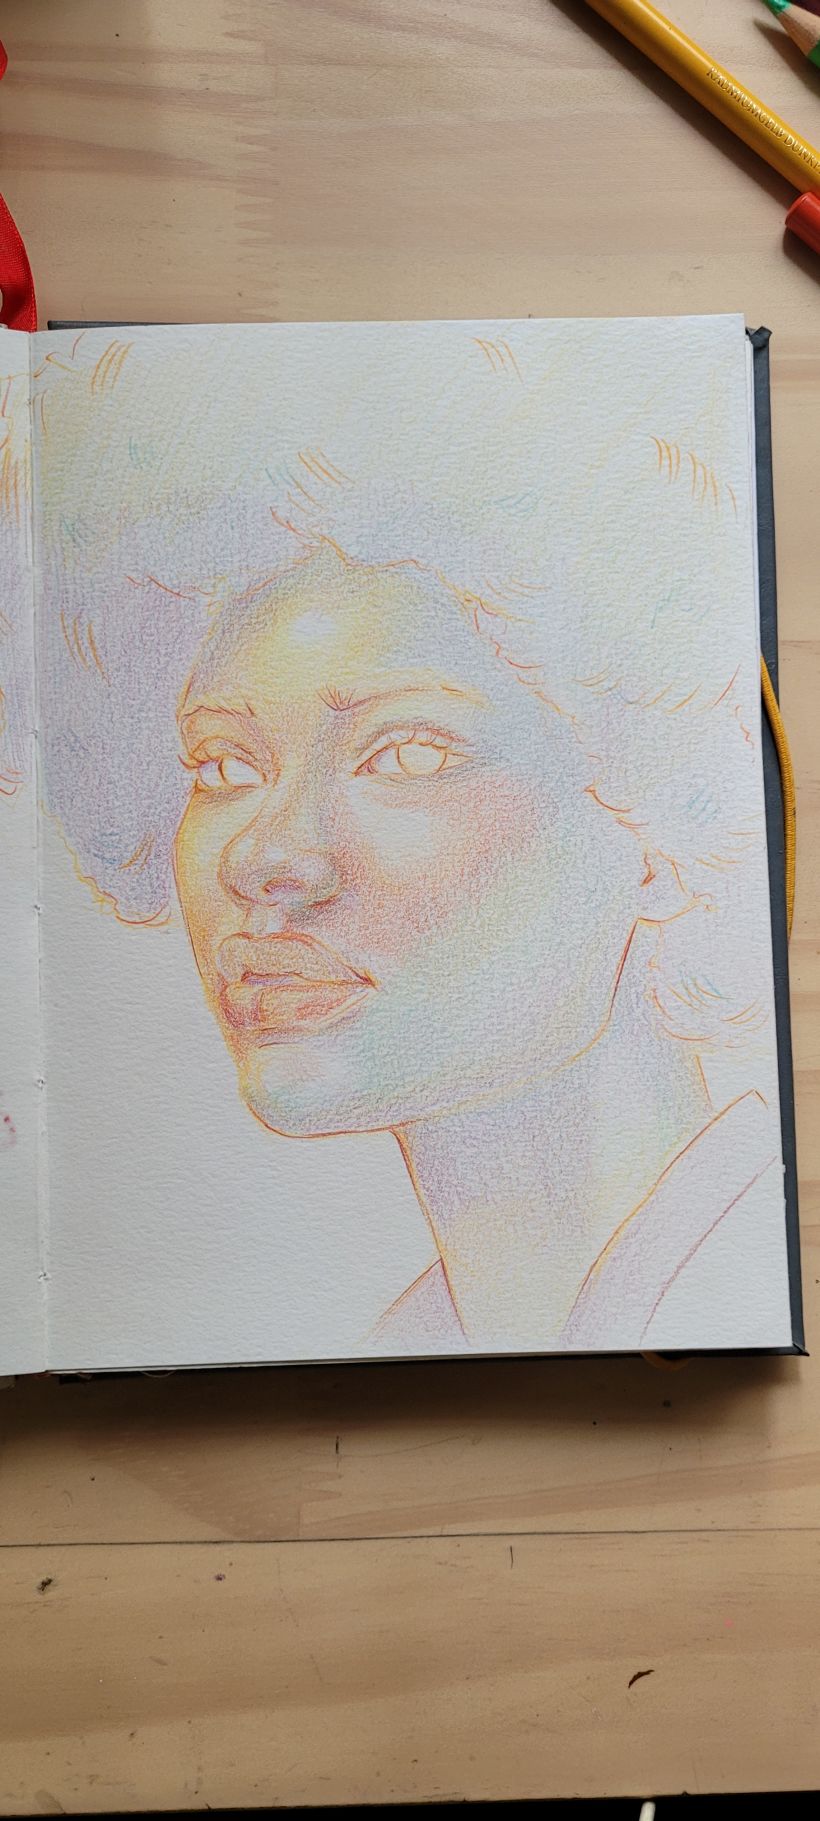 Meu projeto do curso: Desenho de retratos vibrantes com lápis de cor 8